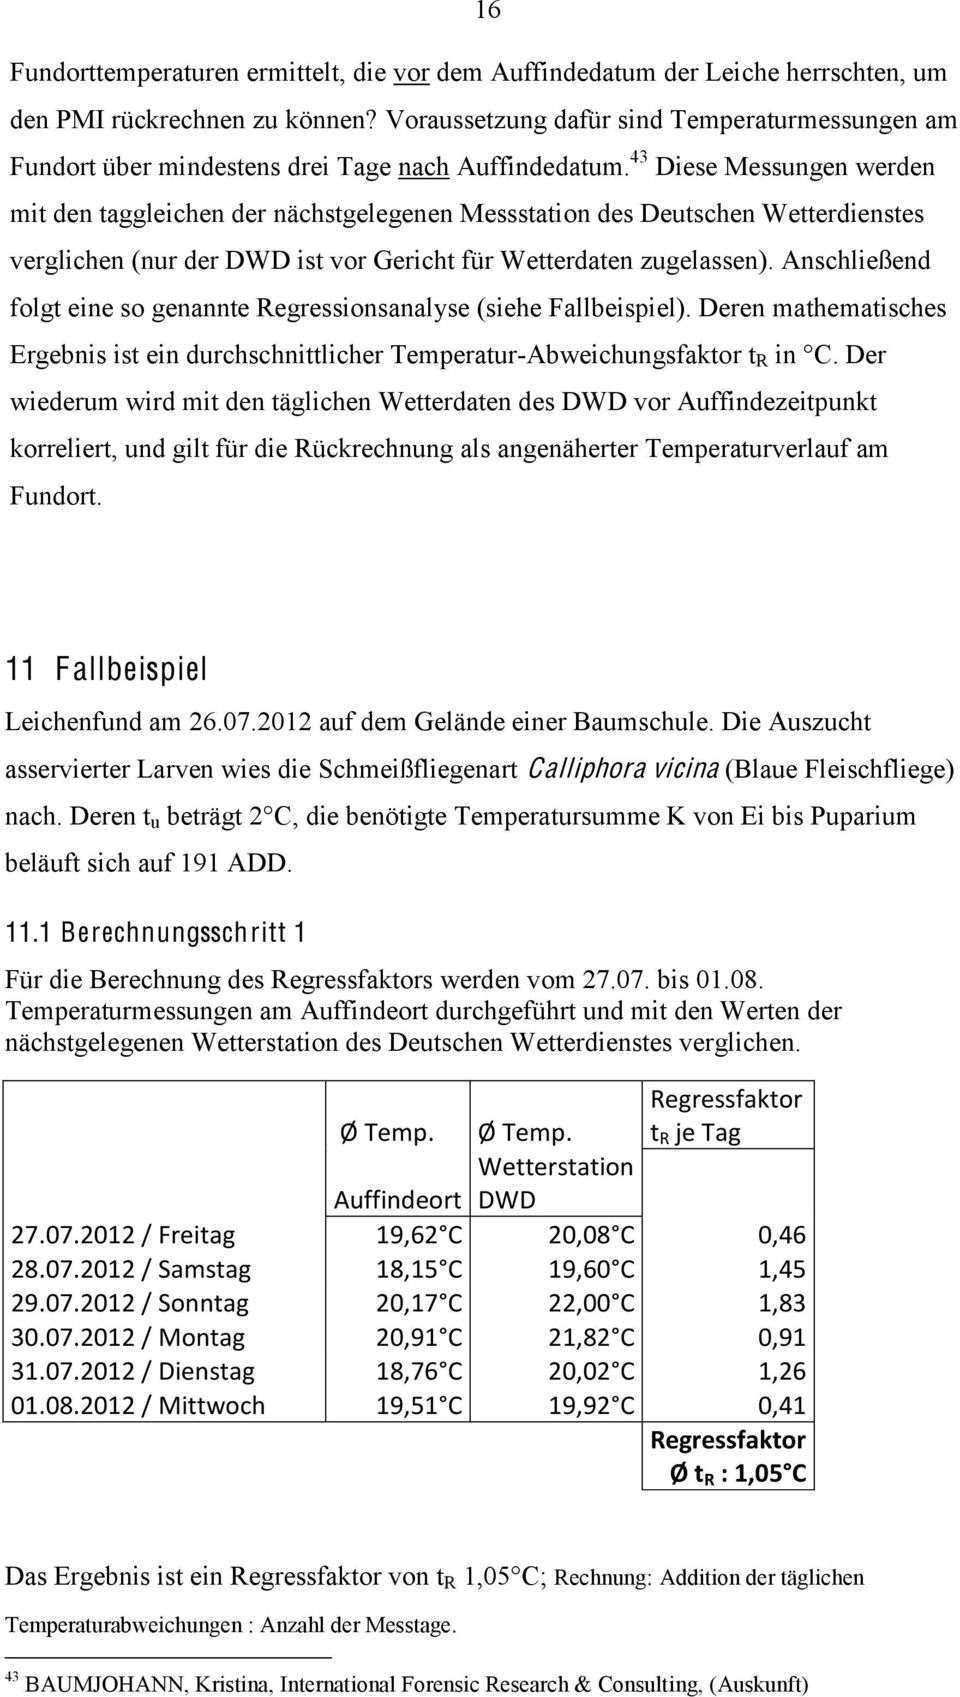 43 Diese Messungen werden mit den taggleichen der nächstgelegenen Messstation des Deutschen Wetterdienstes verglichen (nur der DWD ist vor Gericht für Wetterdaten zugelassen).